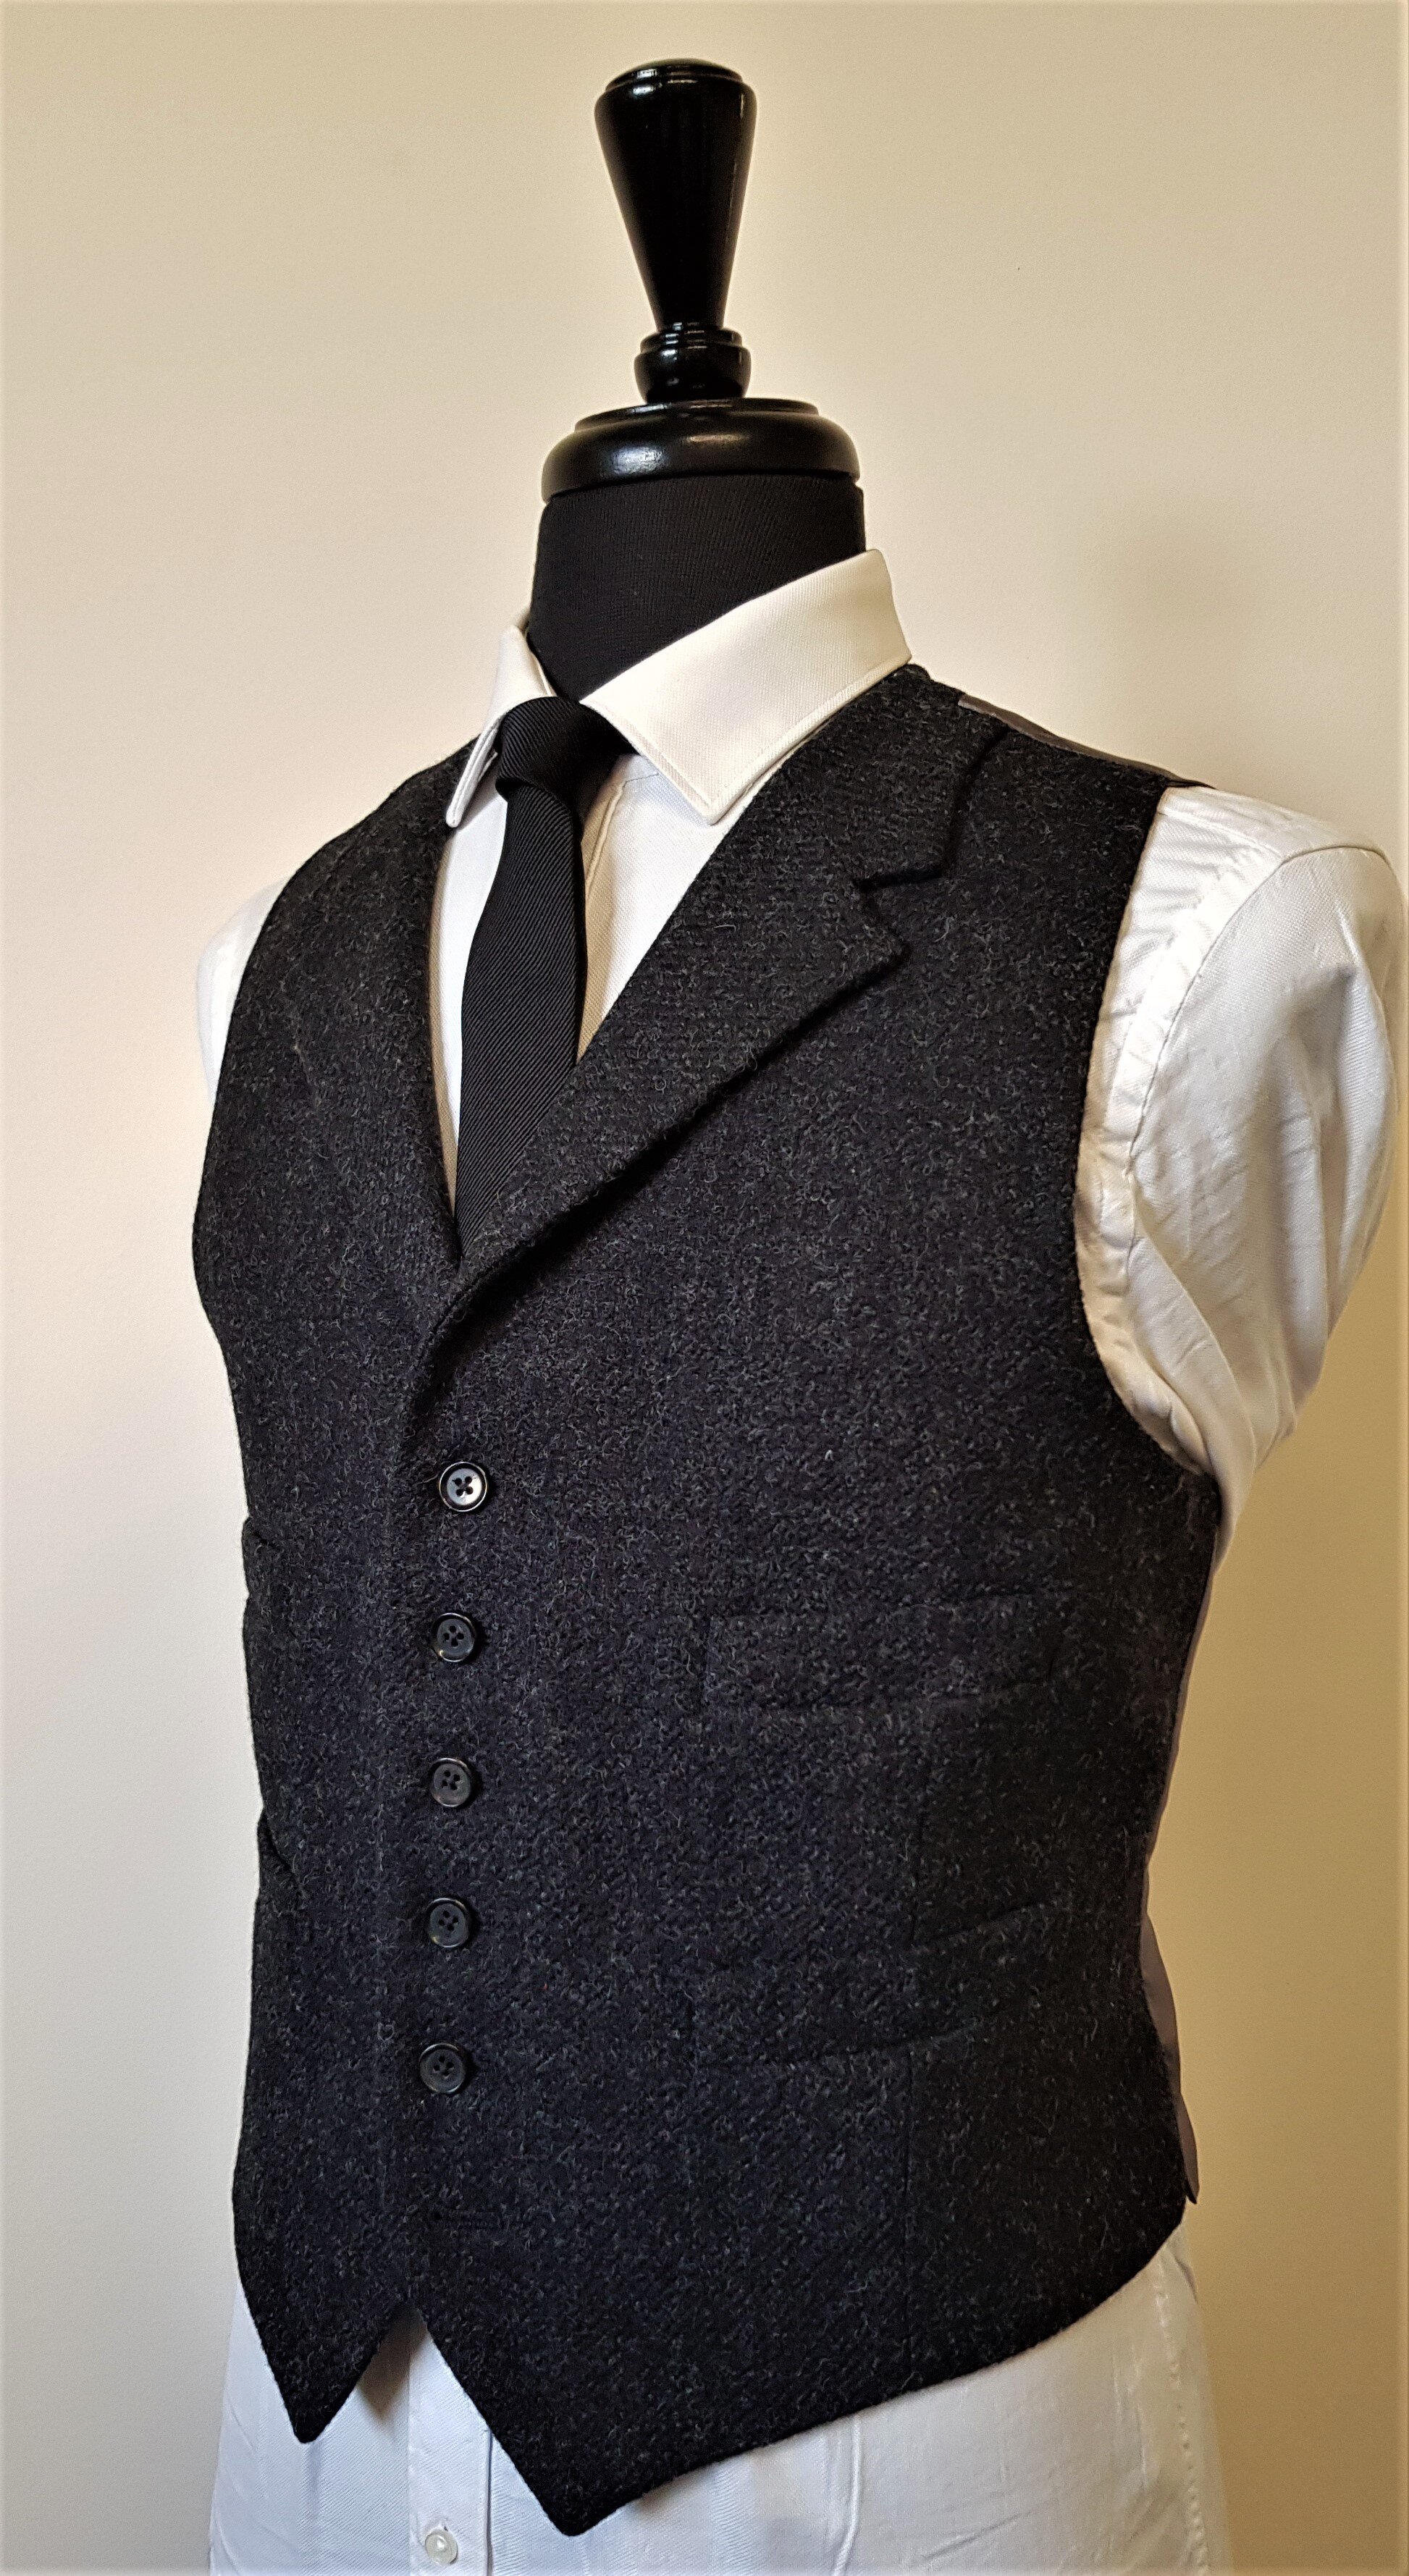 3 Piece Suit in Charcoal Shetland Tweed (1).jpg